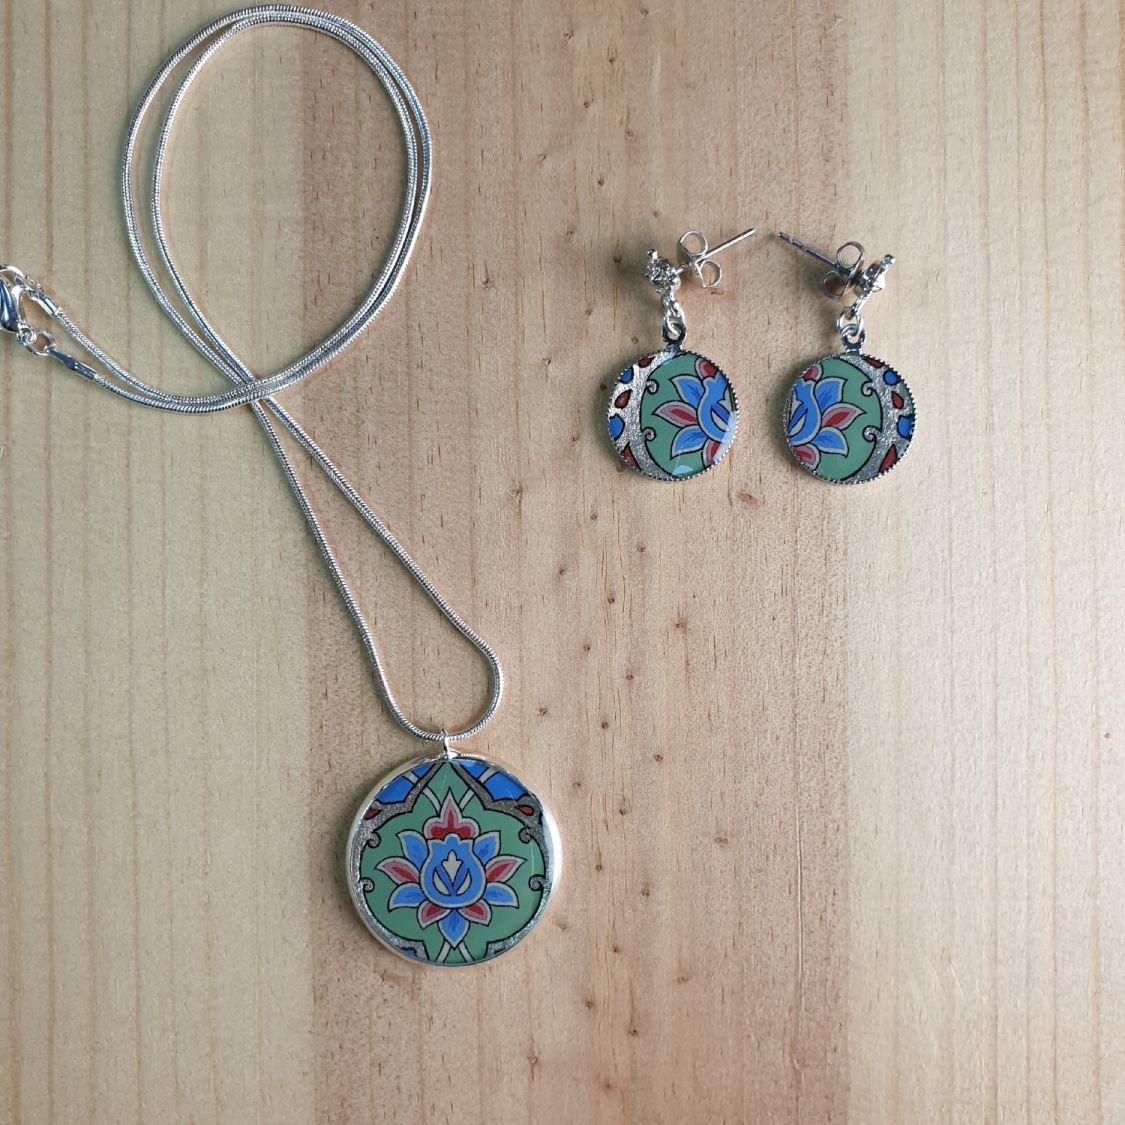 Collier pendentif fleur et arabesques vert/argenté/bleu/rosé sur chaîne argentée